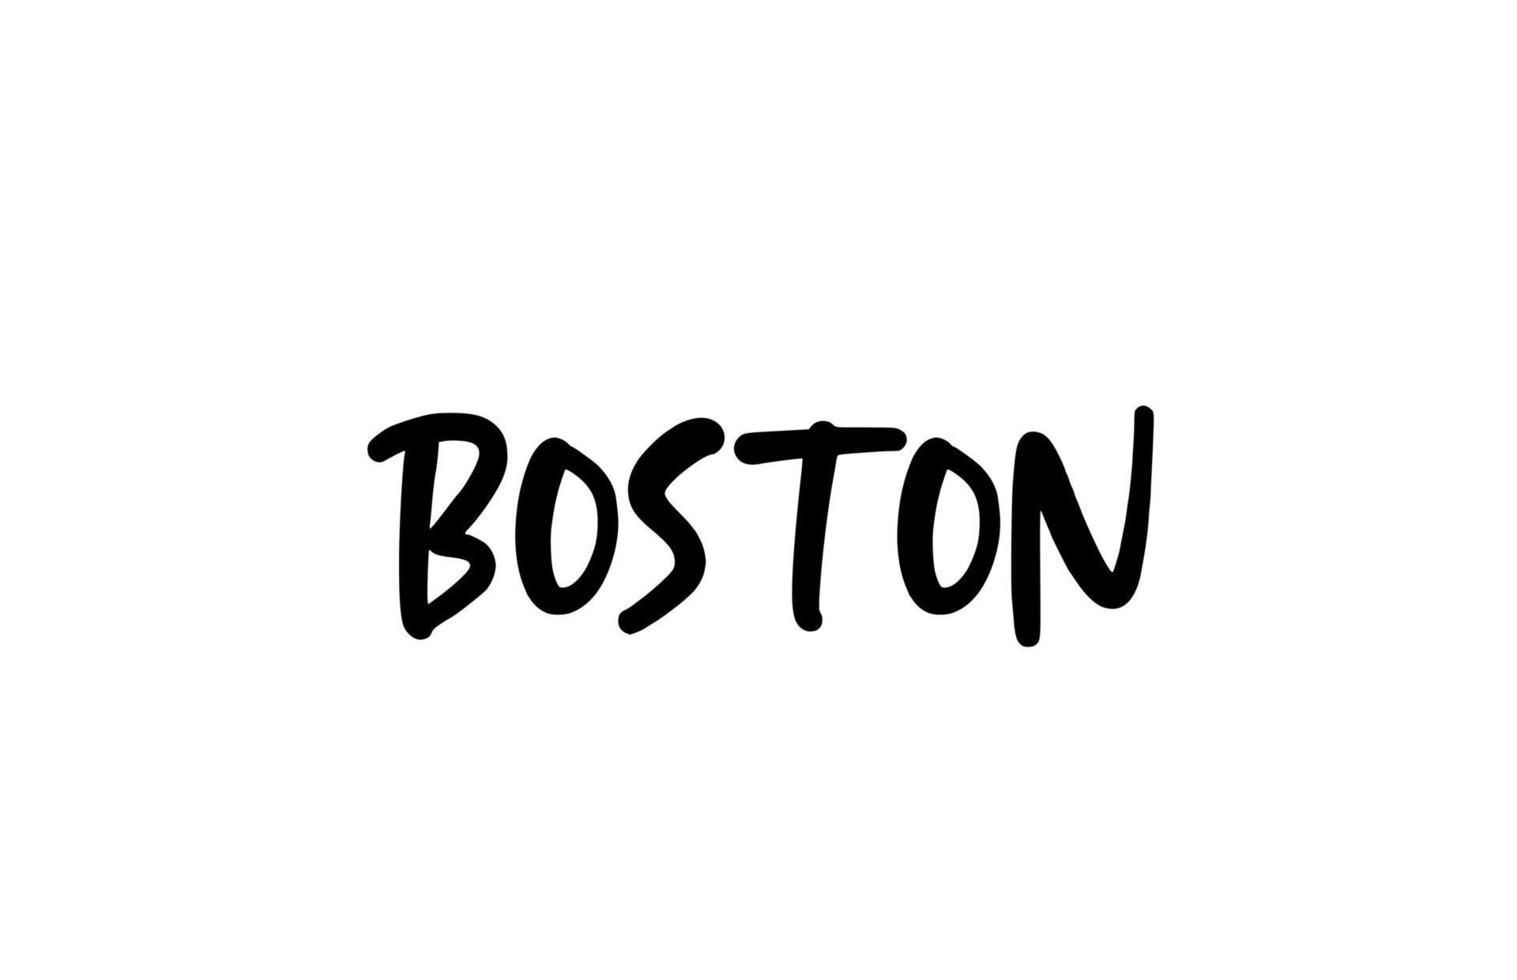 Boston city typographie manuscrite mot texte lettrage à la main. texte de calligraphie moderne. couleur noire vecteur